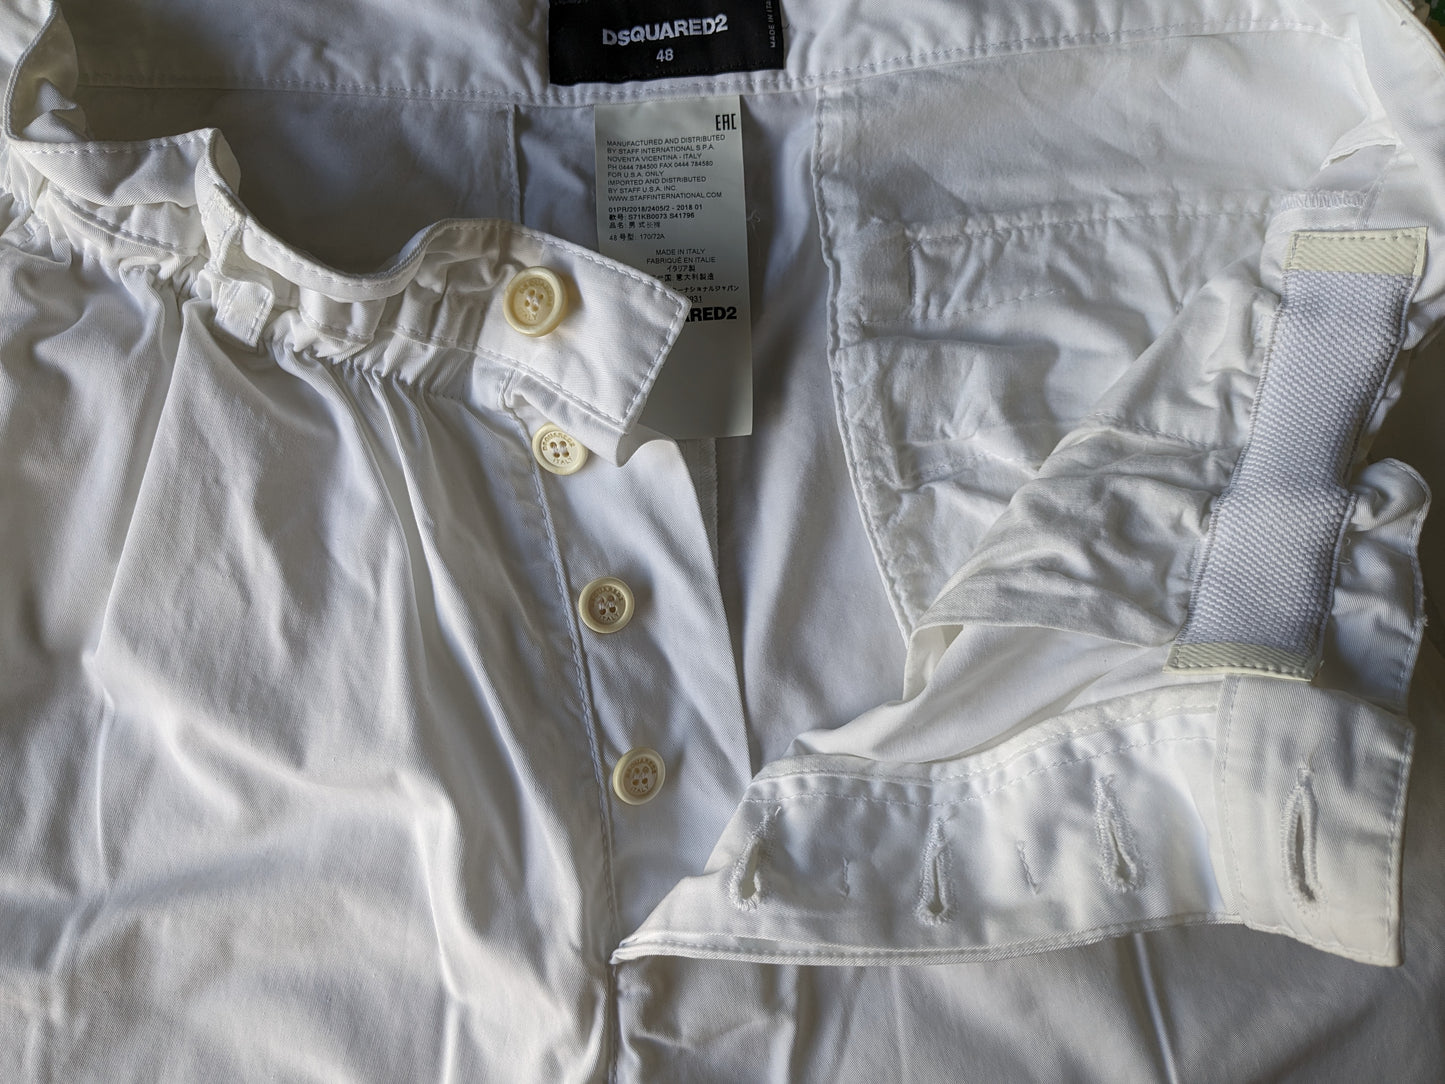 Pantalón Dsquared2 con cinturilla elástica. De color blanco. Talla 48/M.